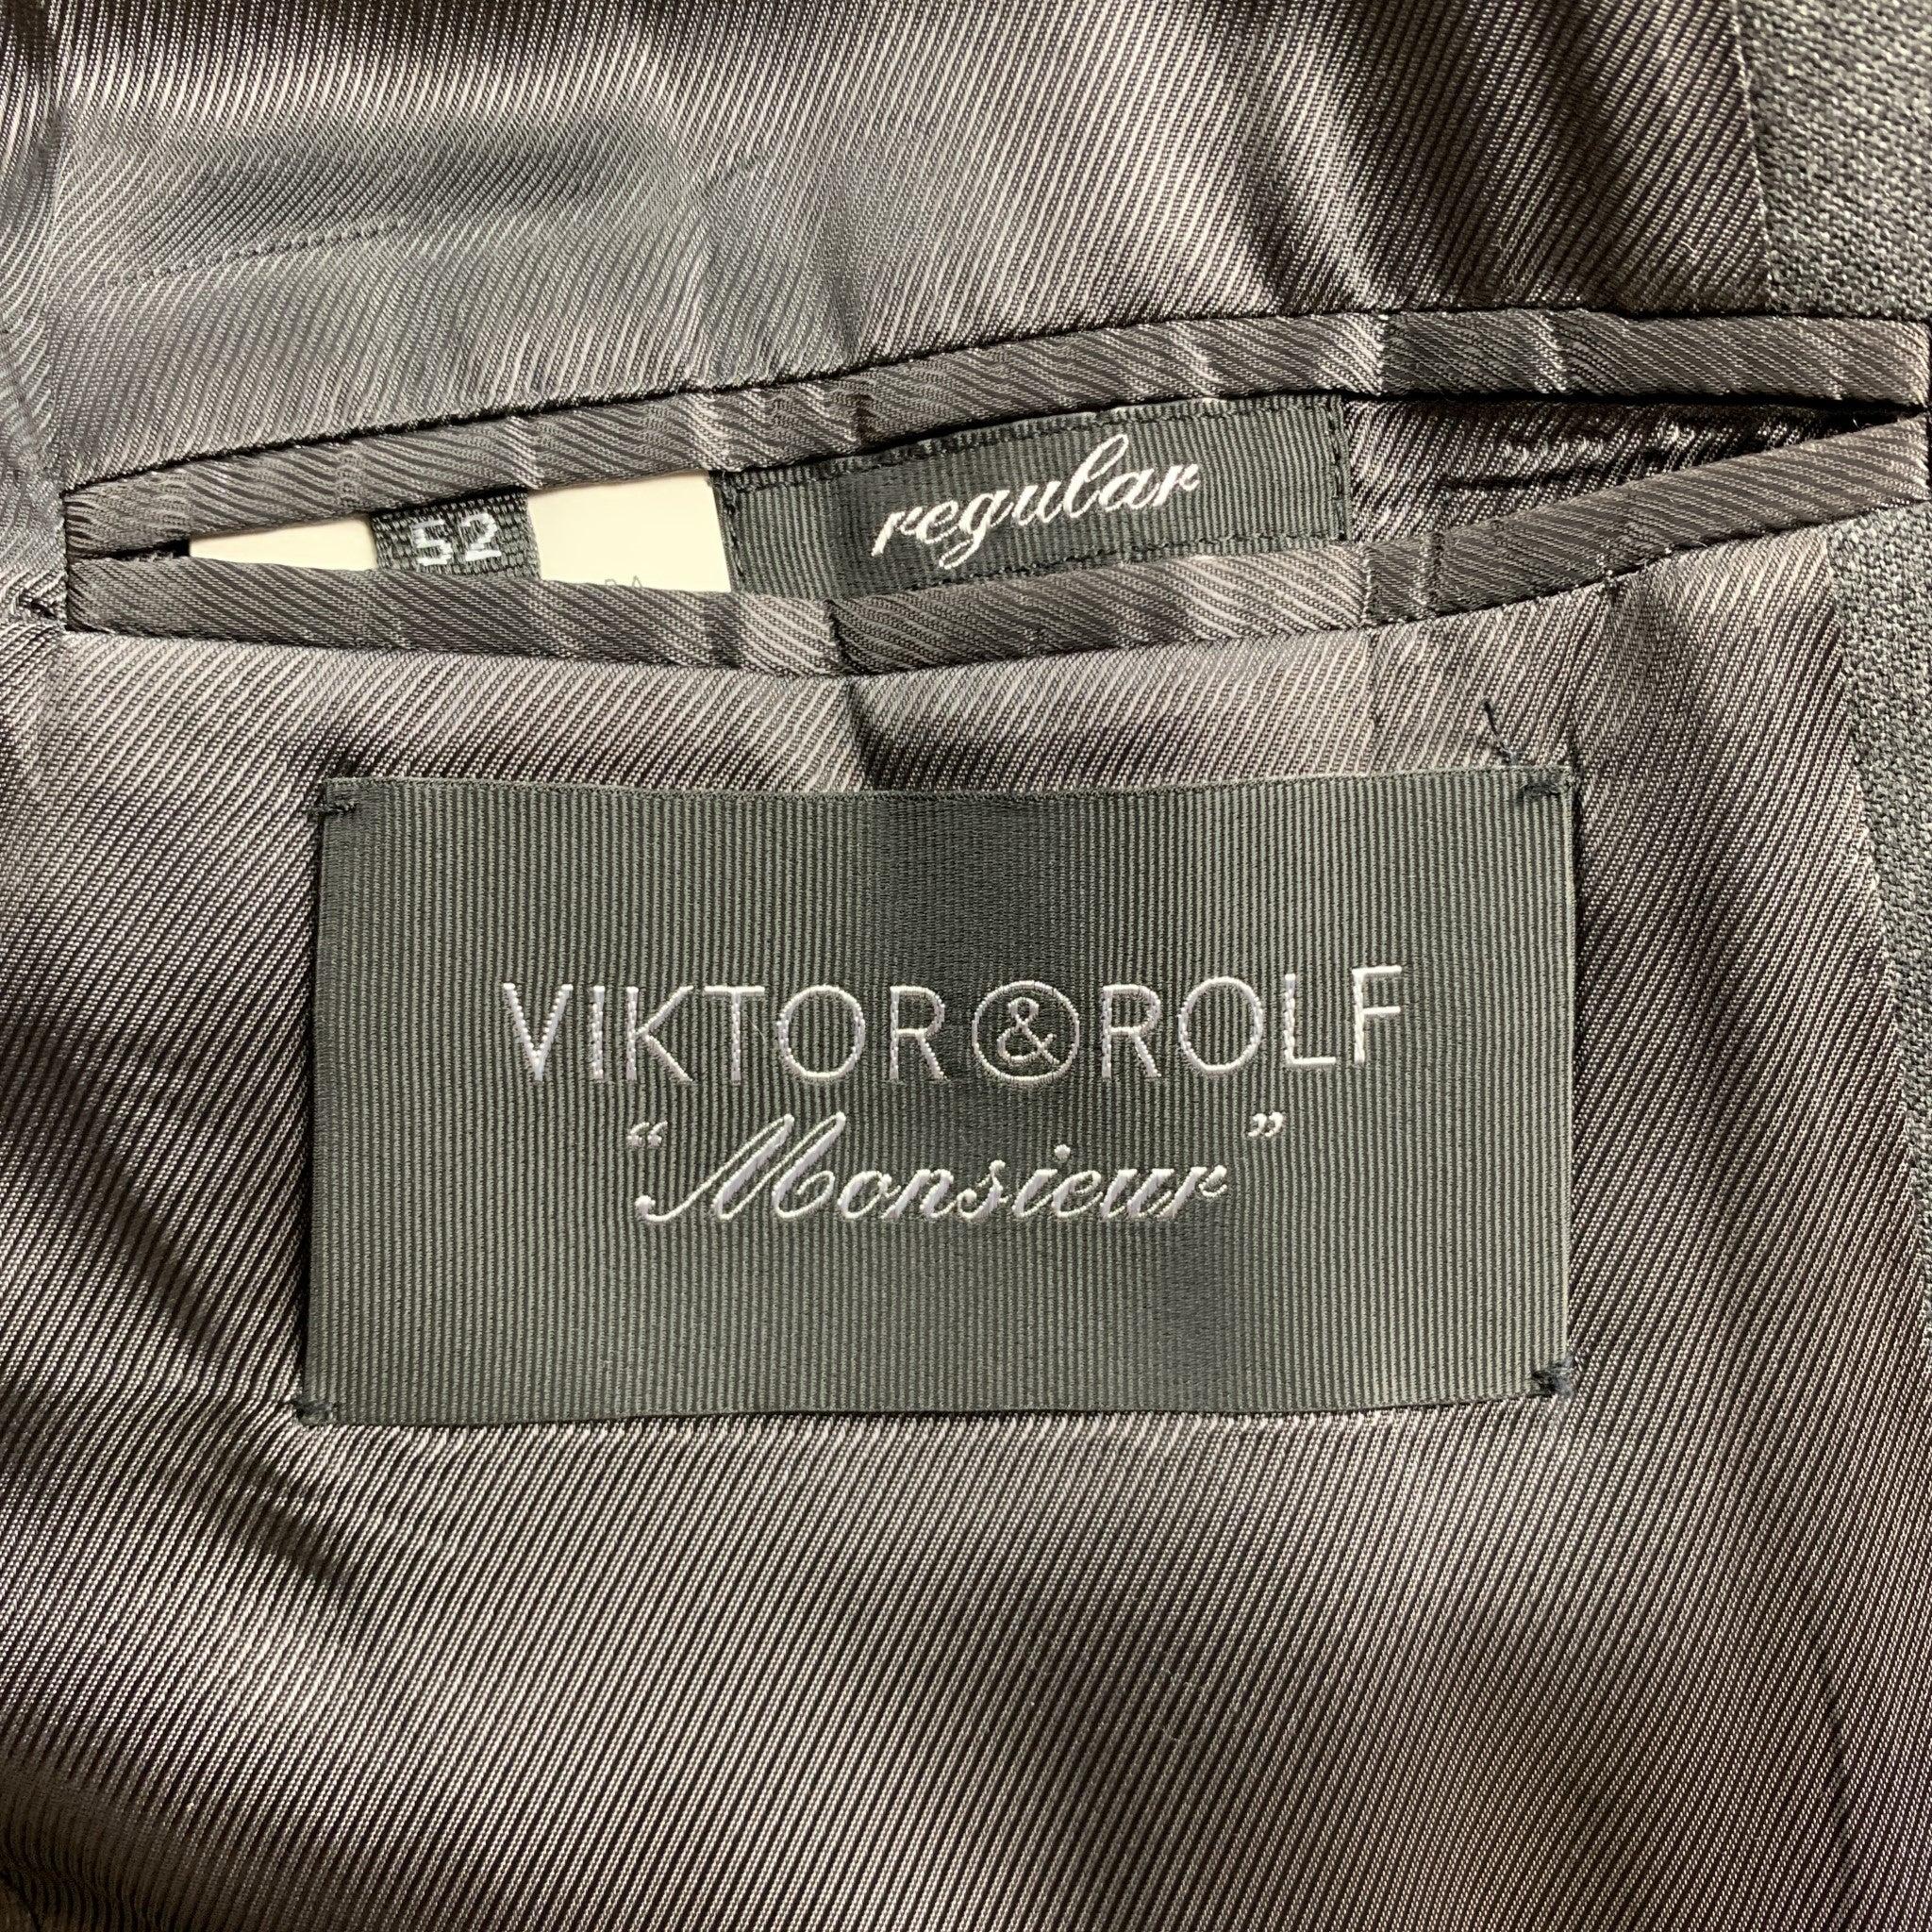 VIKTOR & ROLF Größe 42  Dunkelgrauer Anzug mit regulärem Revers aus Wolle im Angebot 3